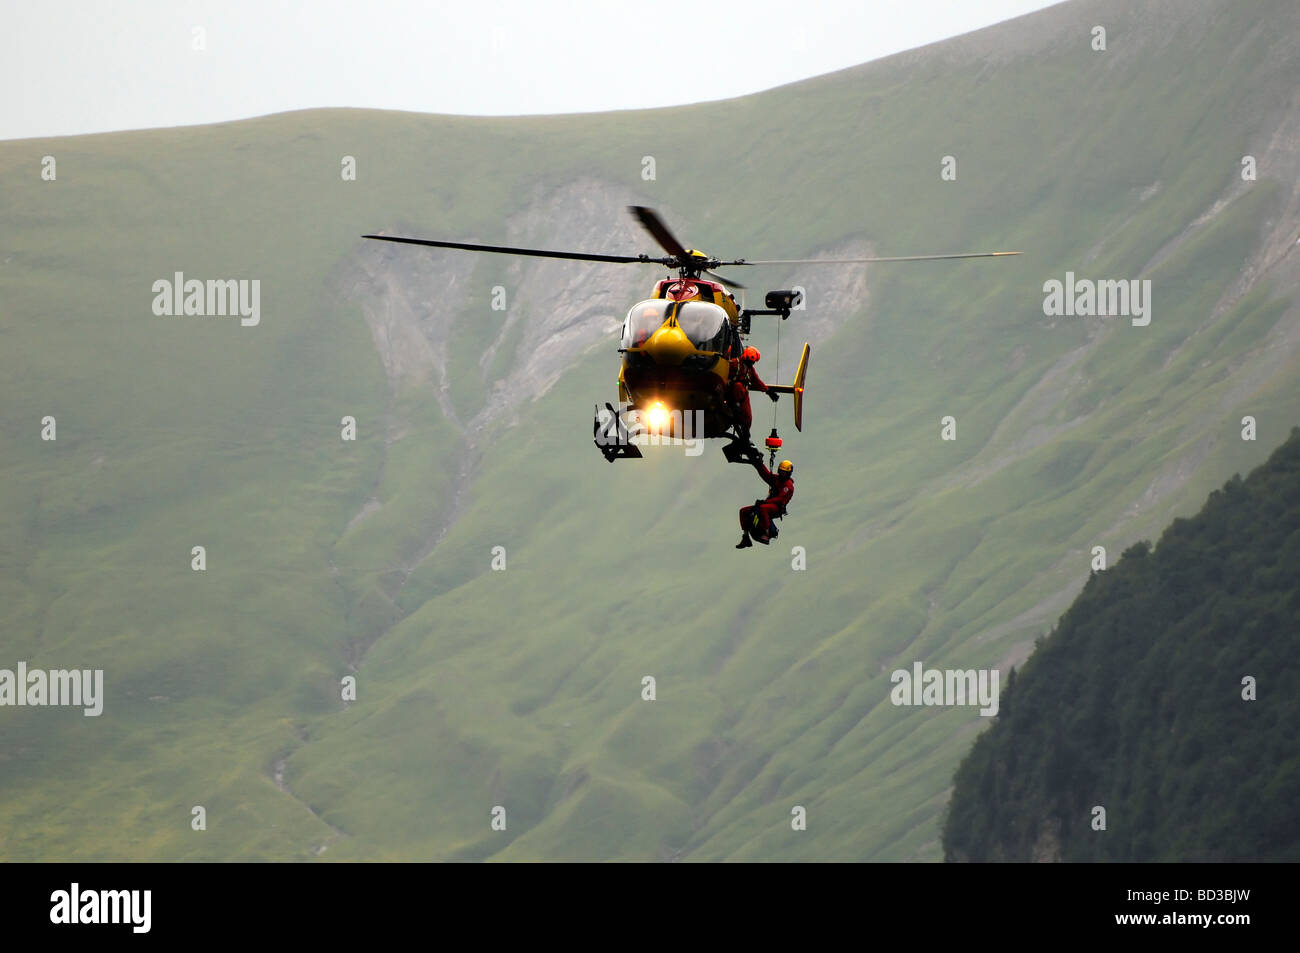 Französischen Berg Rettungshubschrauber, Eurocopter EC145.  Tour de France Zuschauer zu retten, die fiel von einer Klippe in den Alpen. Stockfoto